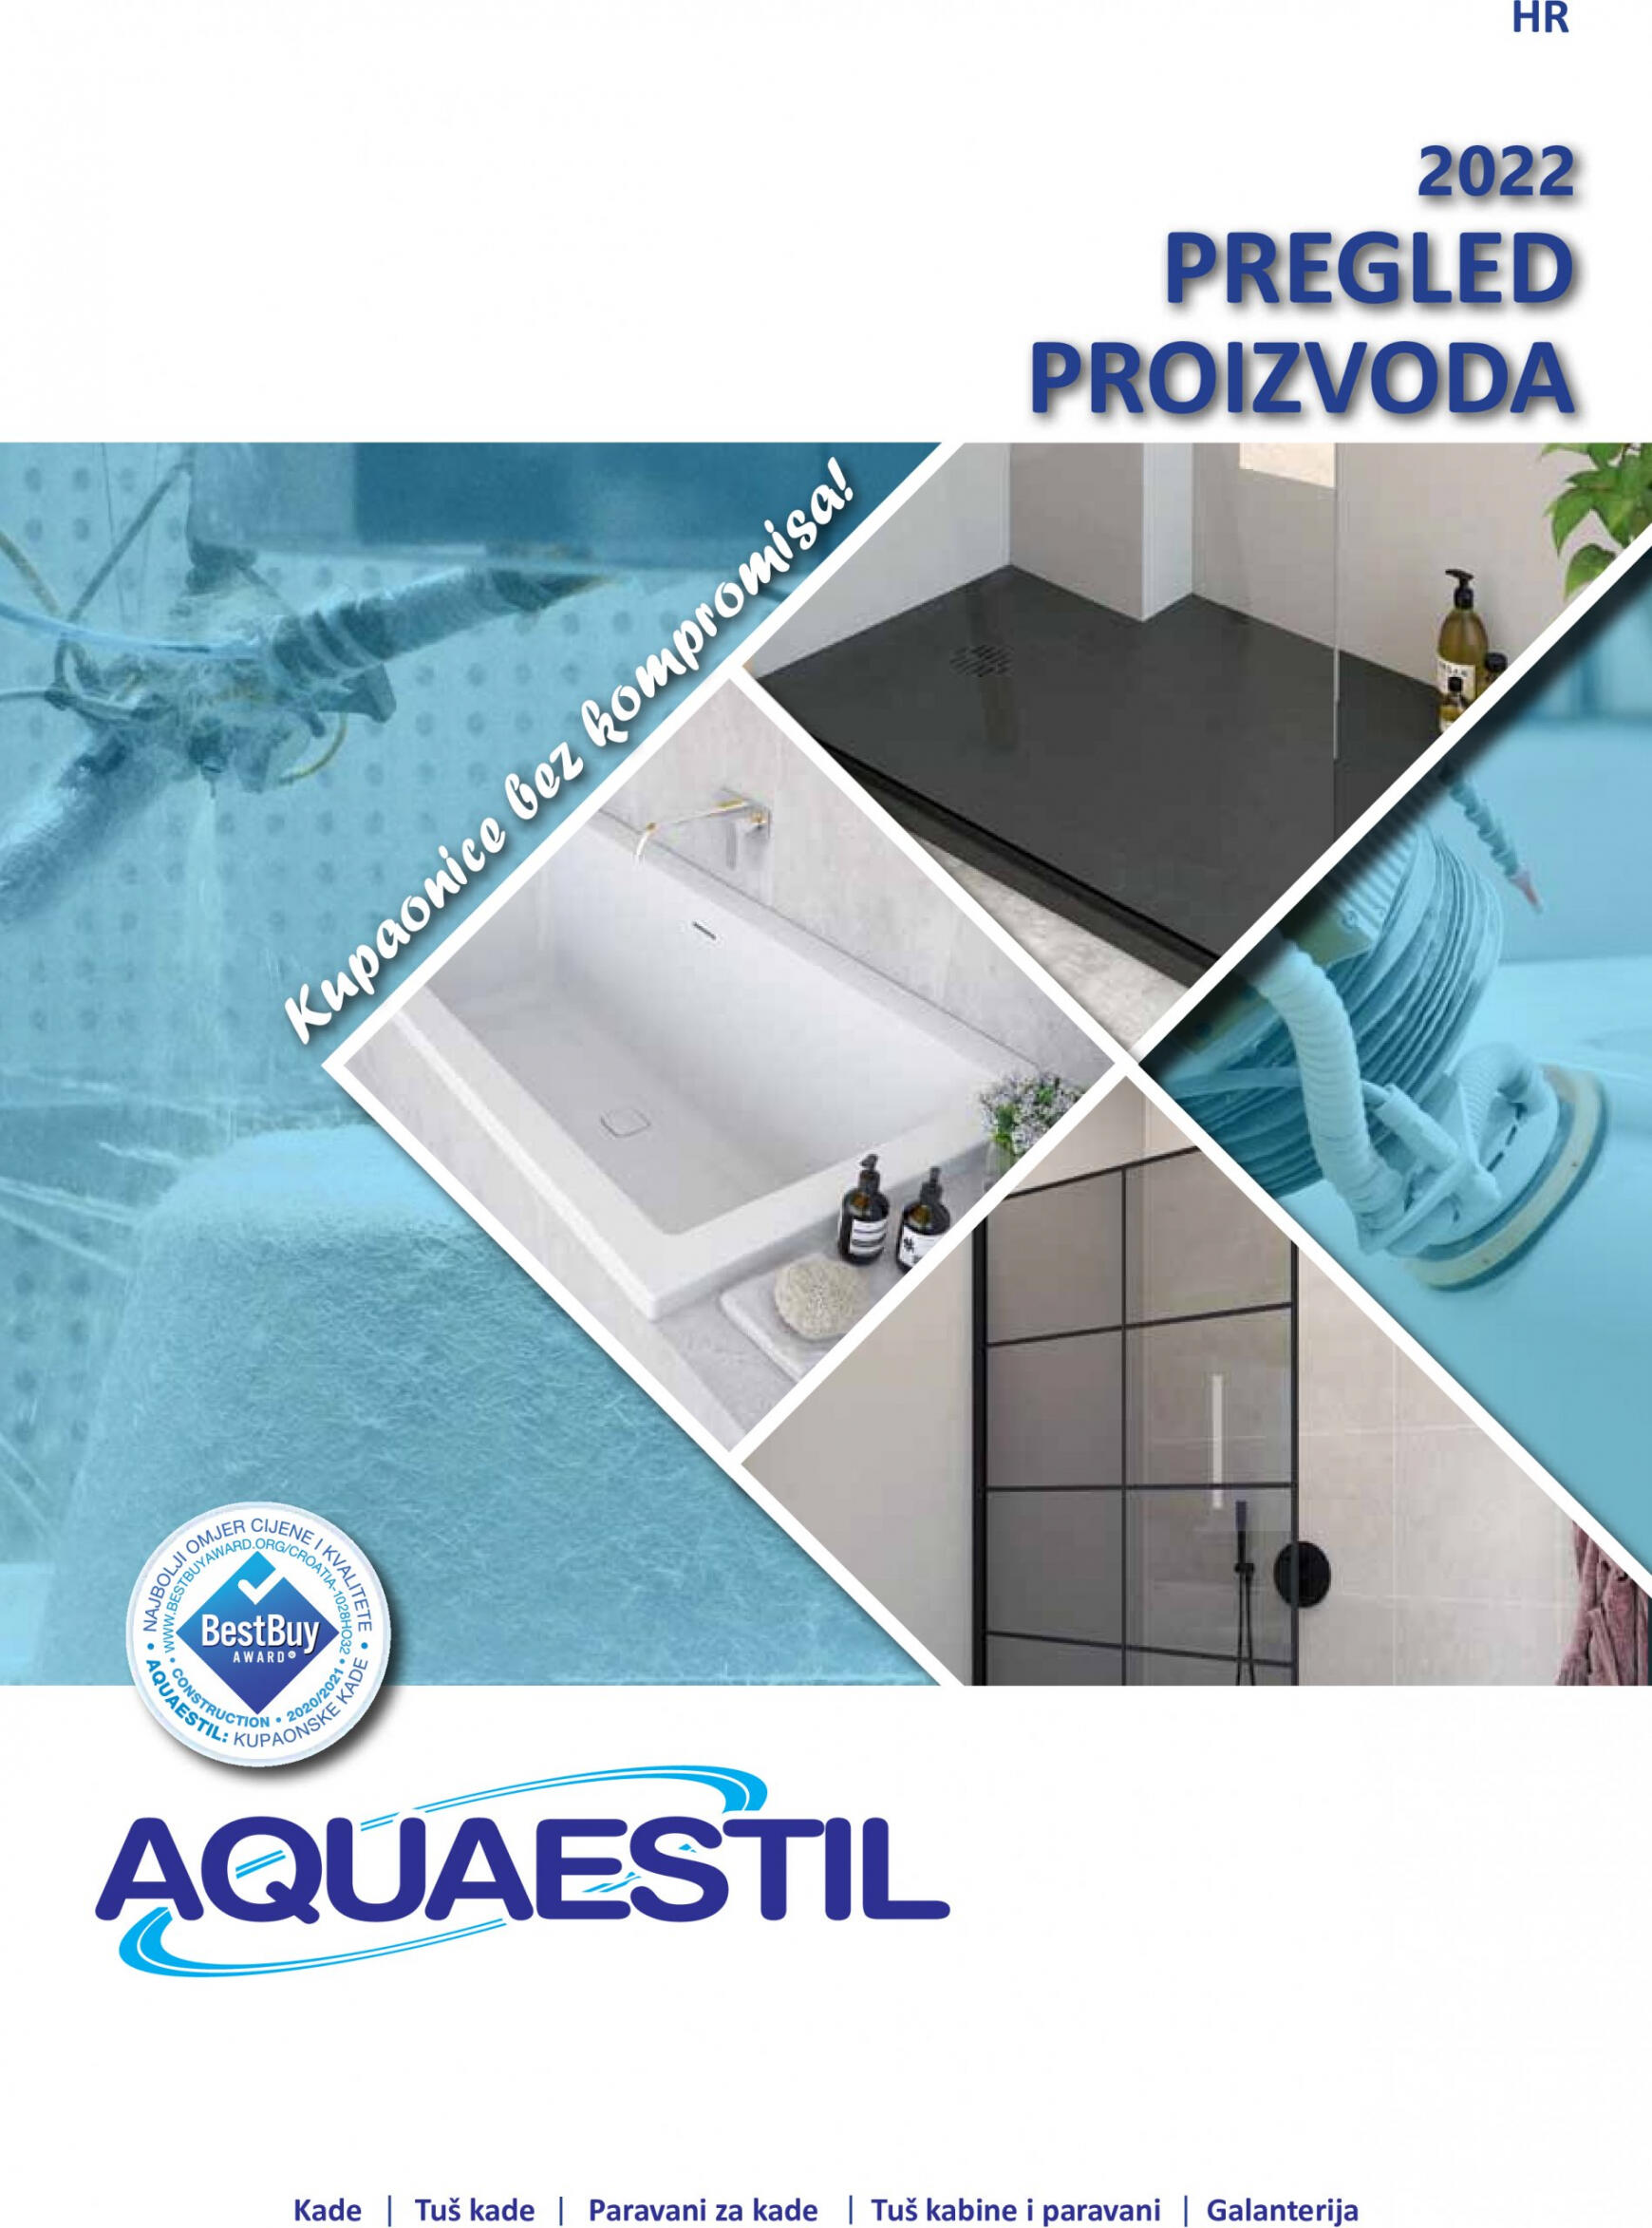 aquaestil - Aquaestil Pregled proizvoda